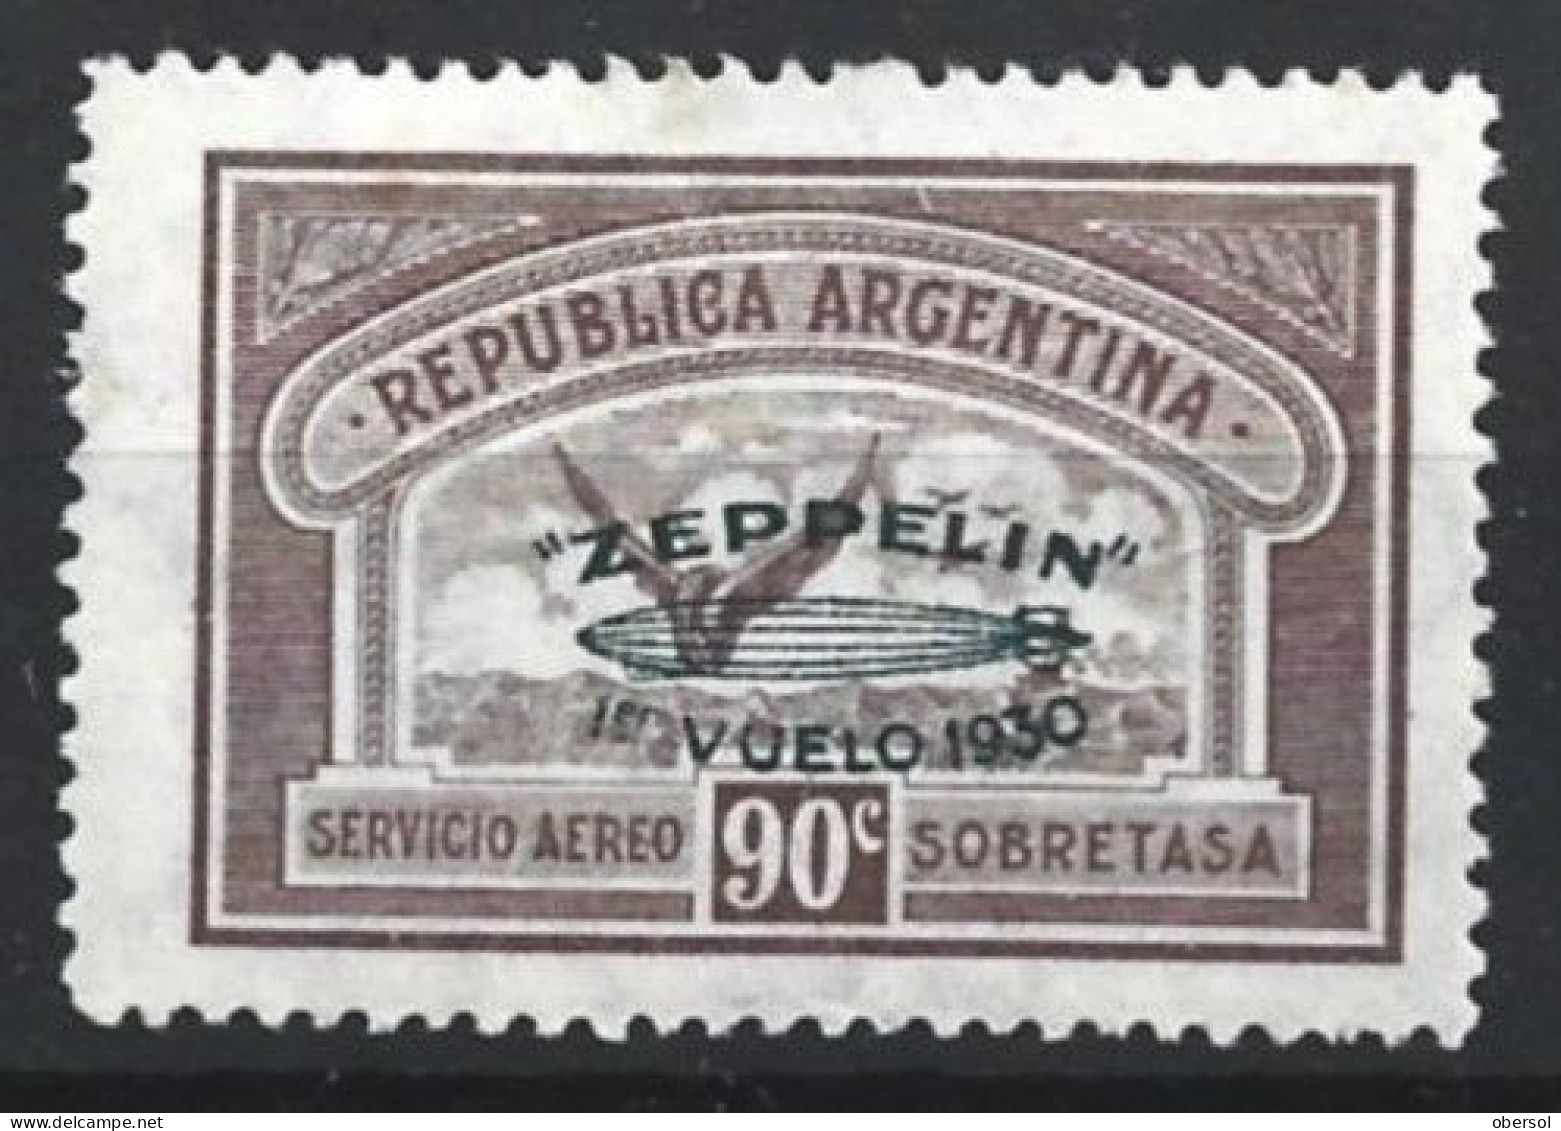 Argentina 1930 Zeppelin Green Overprint 90c MH Stamp (2) - Nuevos